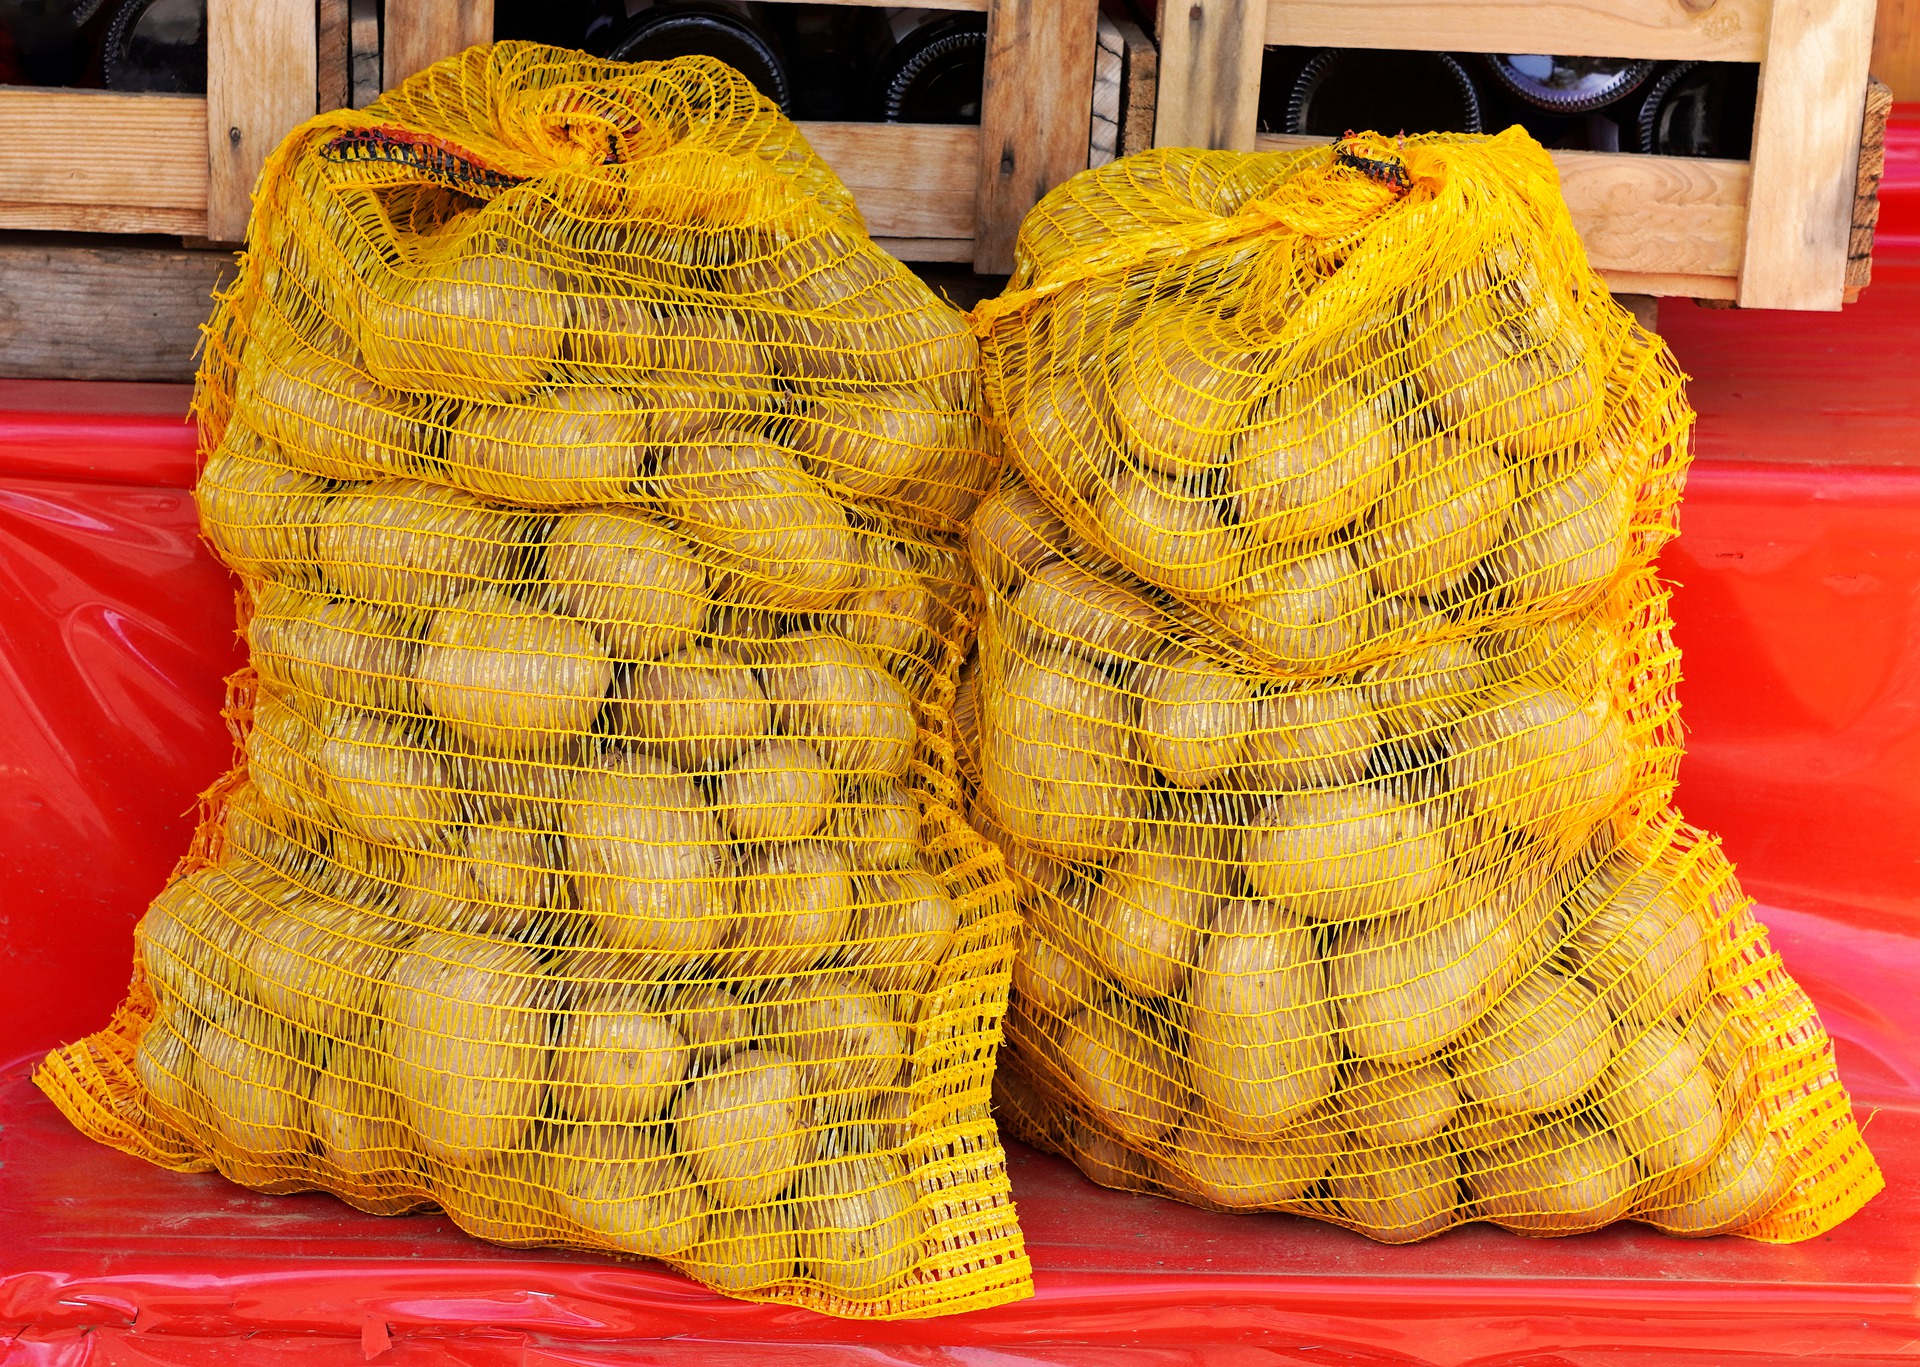 10 kiló krumplit ajándékozott munkatársainak a külügyminisztérium karácsonyra